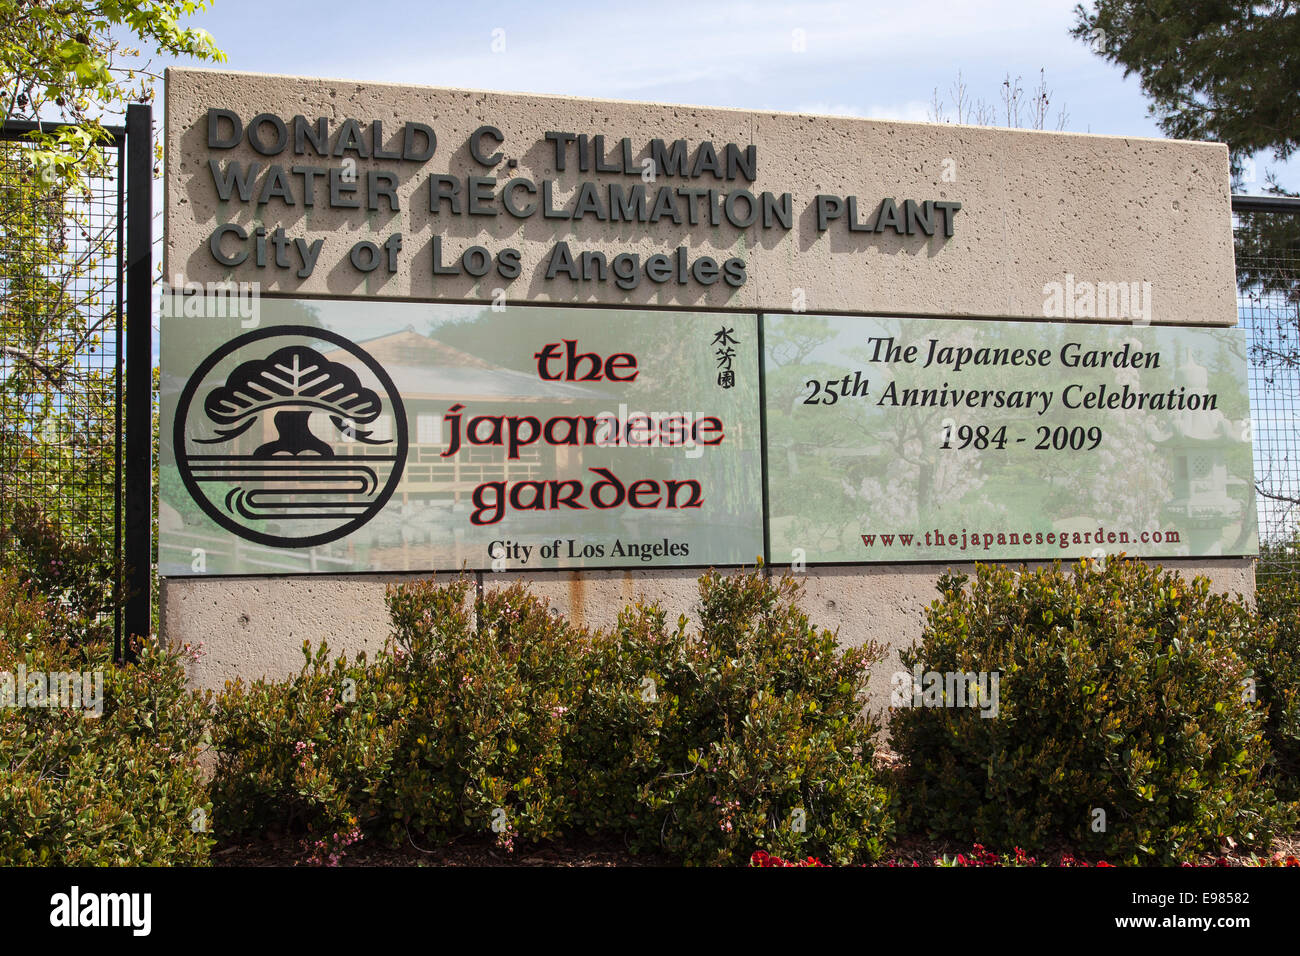 Donald C. Tillman usine de recyclage de l'eau et les Jardins Japonais, Van Nuys, Californie, USA Banque D'Images